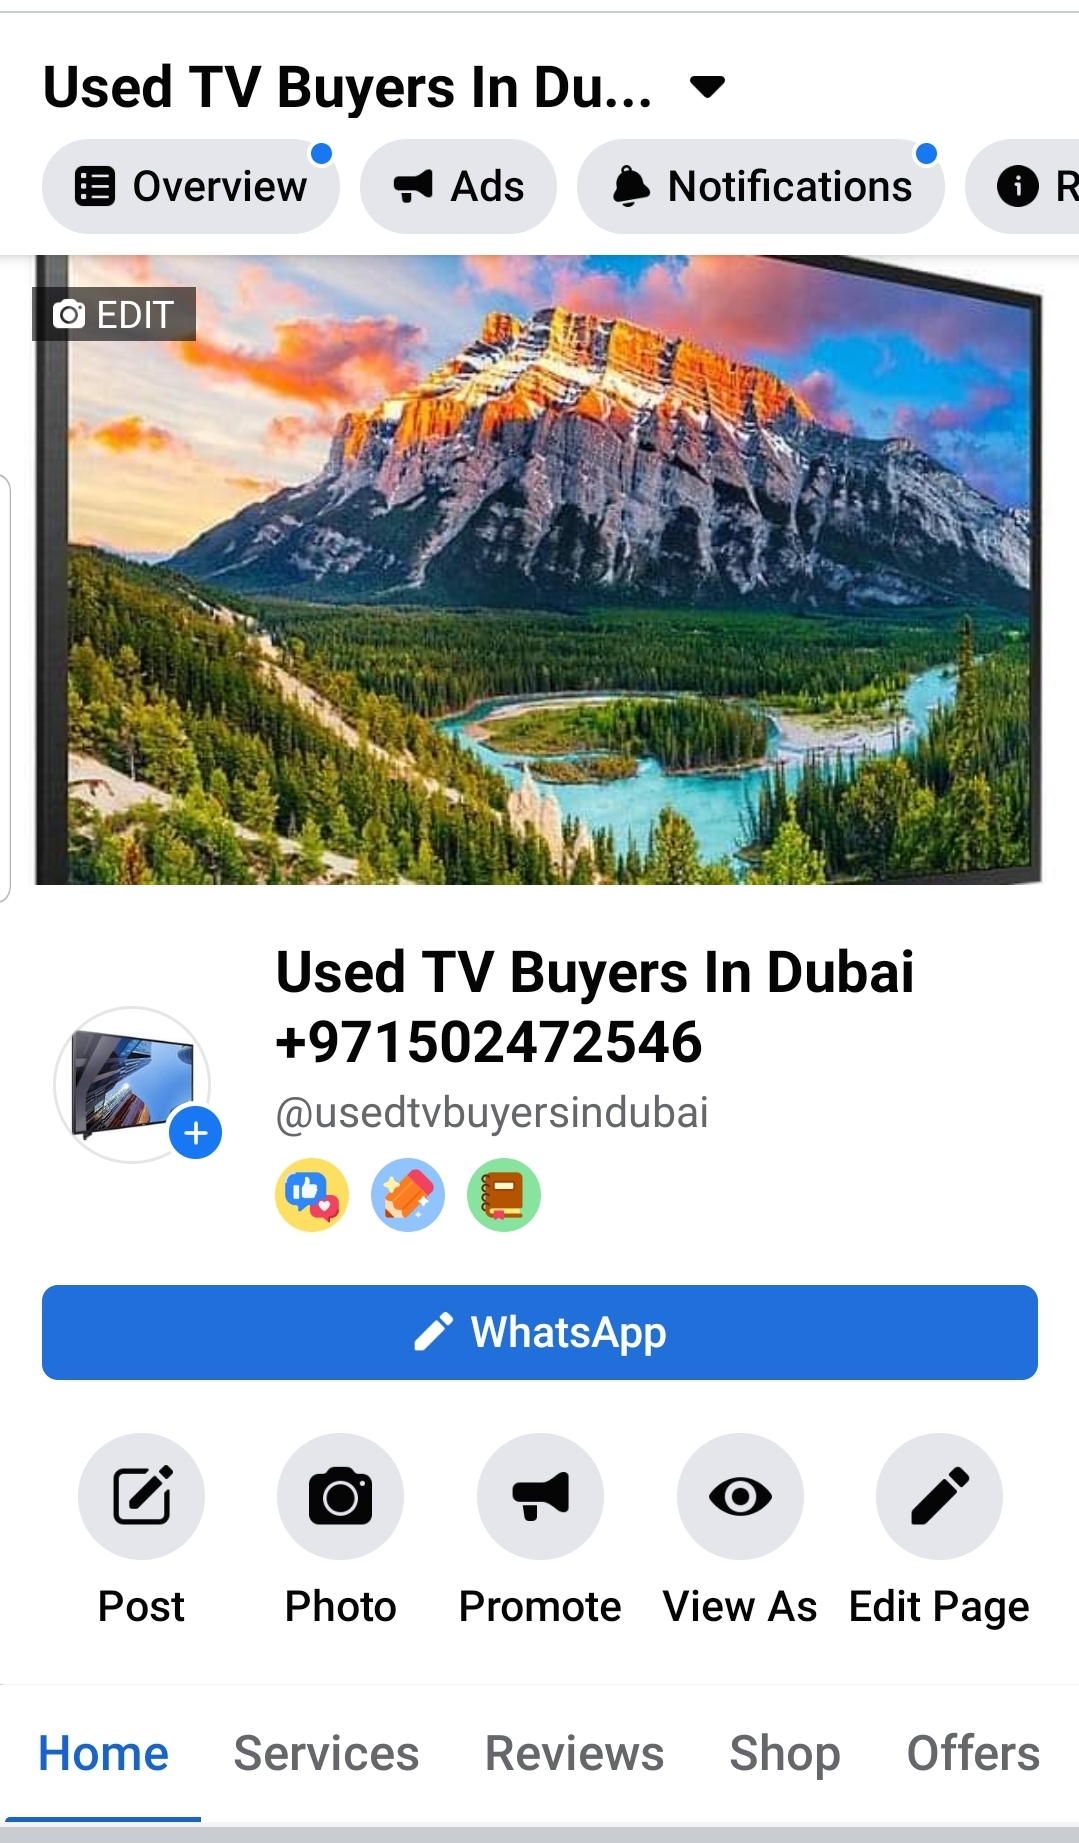 Used TV Buyers In Al Barsha 0502472546